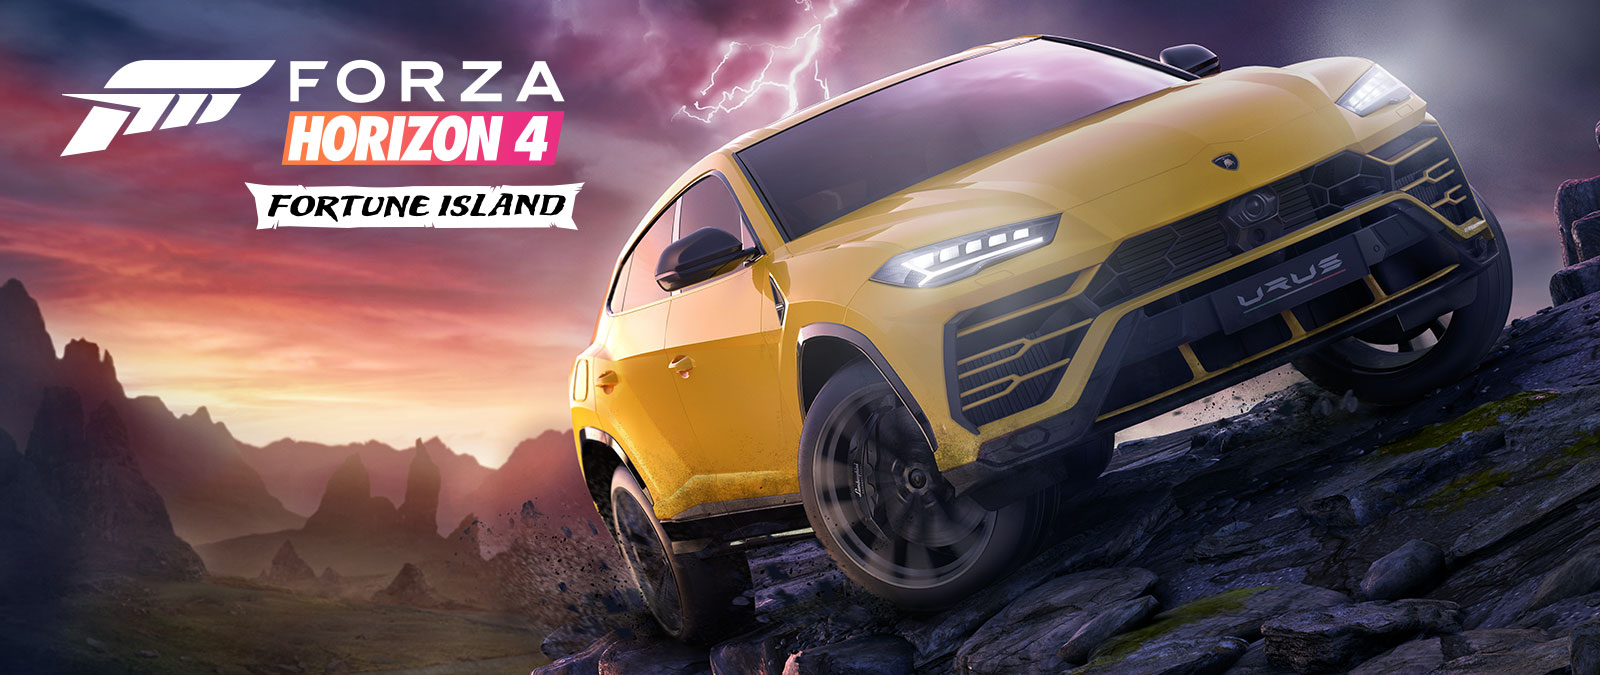 Forza Horizon 4 Fortune Island, een gele Lamborghini Urus rijdt op verraderlijk terrein met bliksemflitsen op de achtergrond